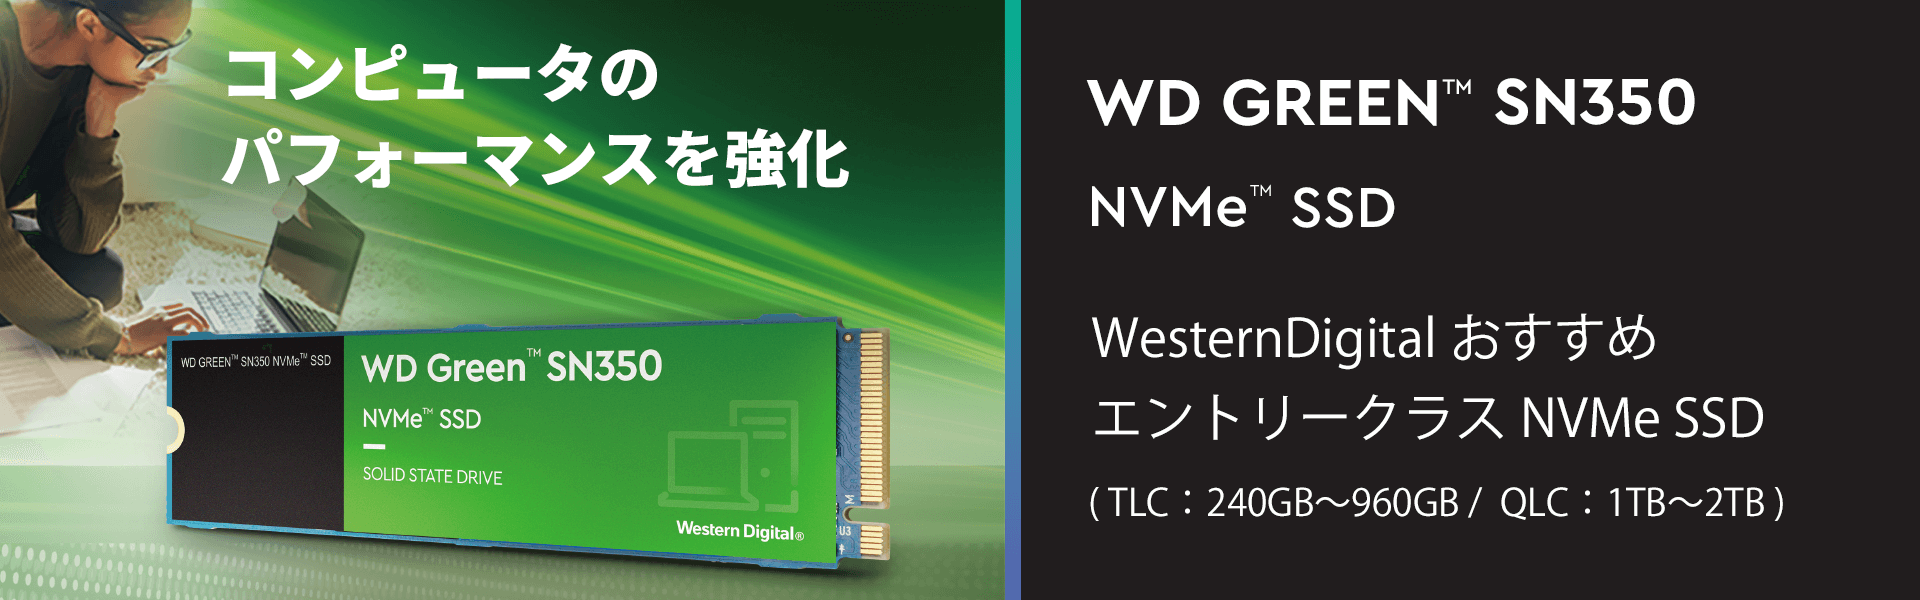 WD GREEN SN350 NVMe SSD